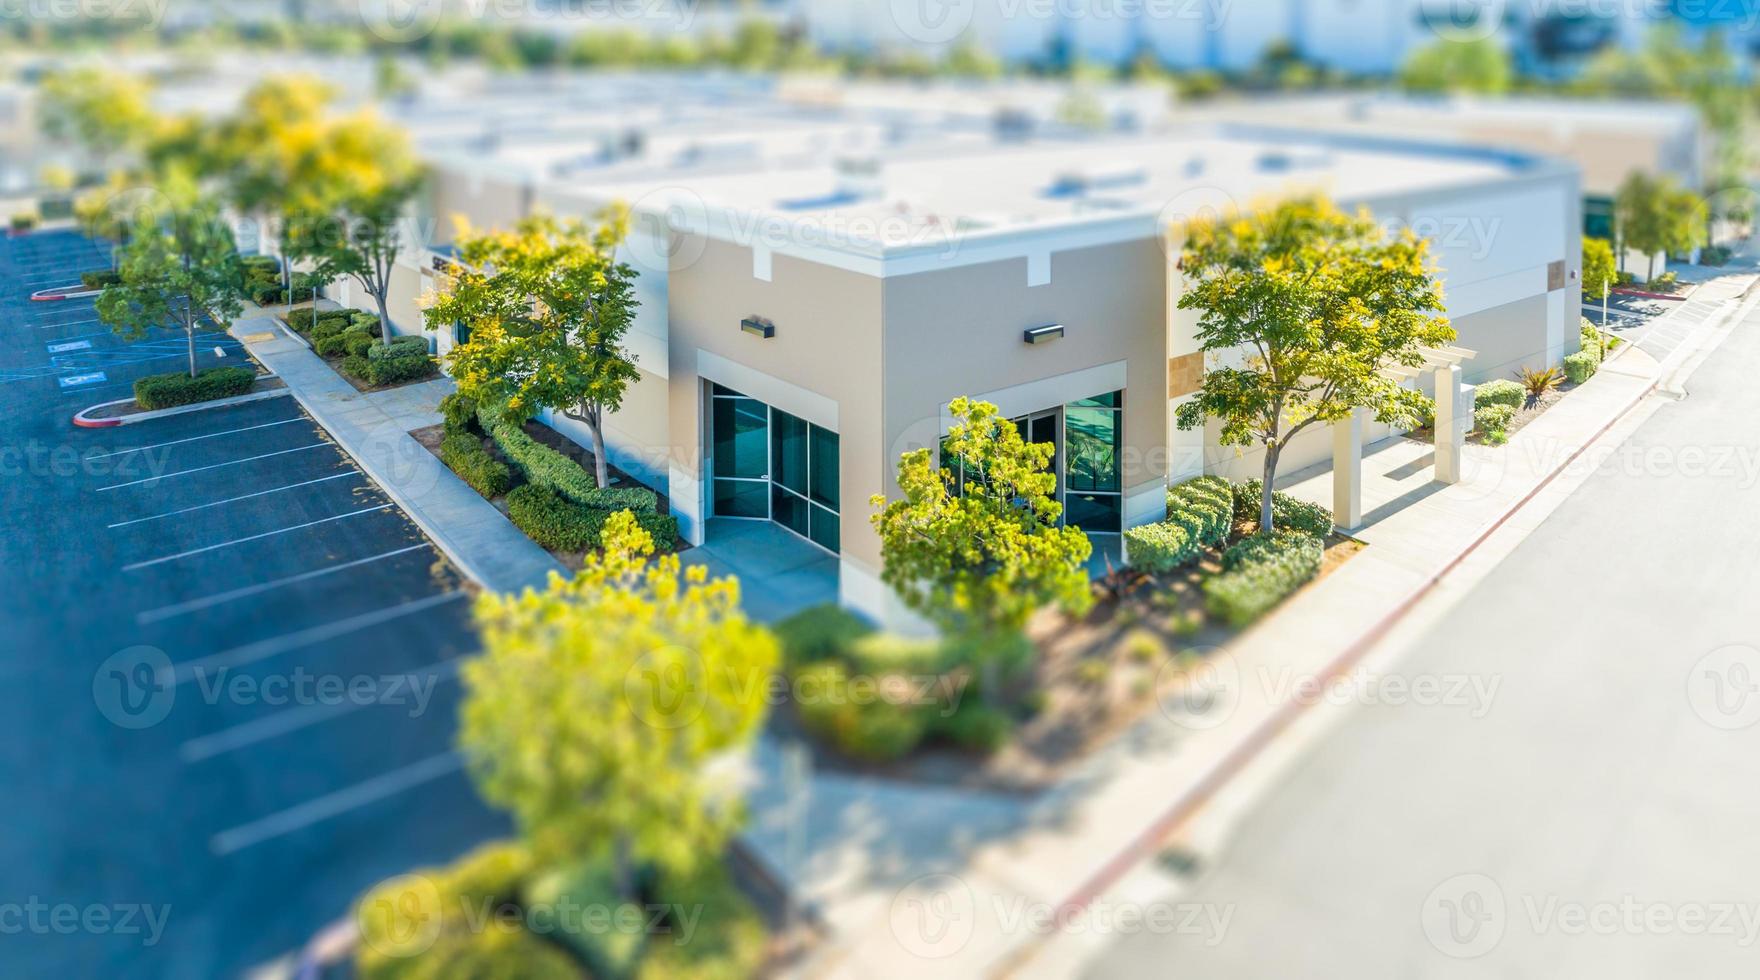 Luftaufnahme von Geschäftsgebäuden mit Tilt-Shift-Unschärfe foto